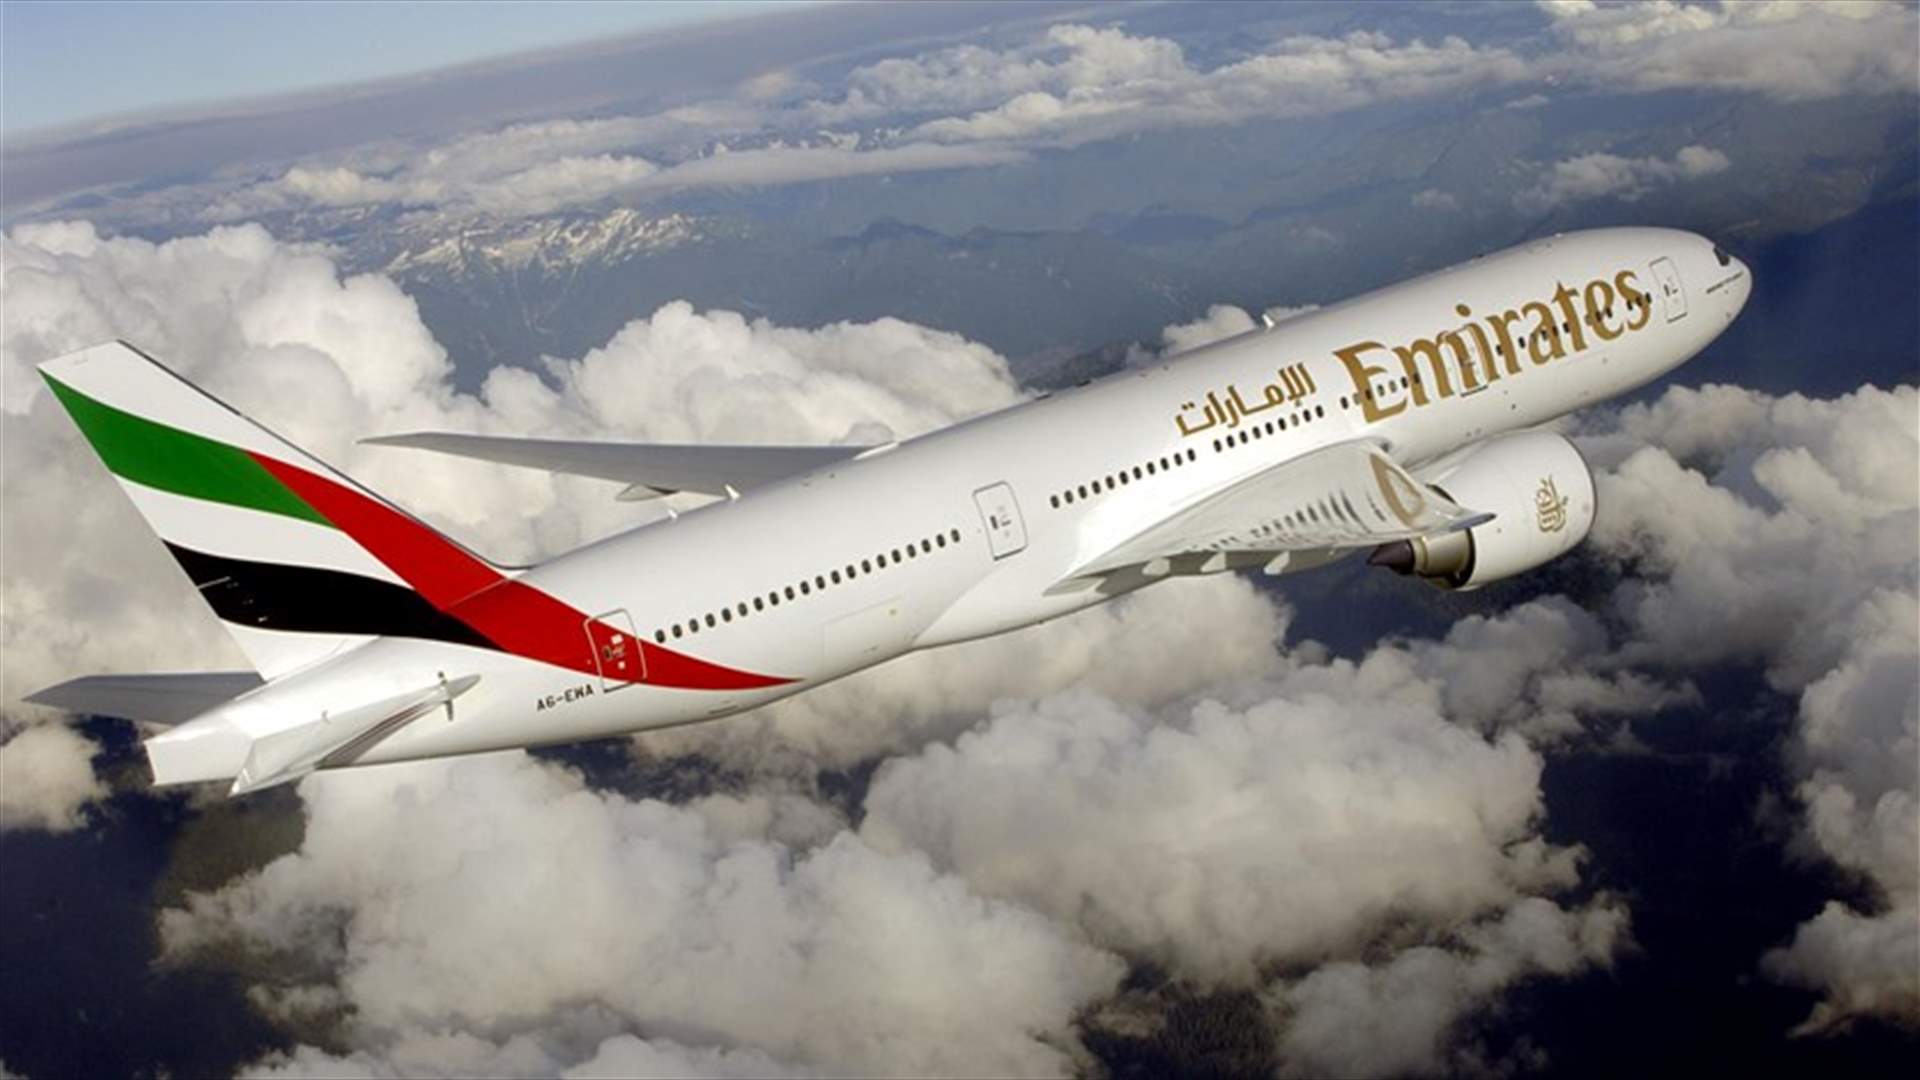 بعد منع الأجهزة الإلكترونية على متن الطائرات... طيران الإمارات يعلن عن خدمة جديدة للمسافرين